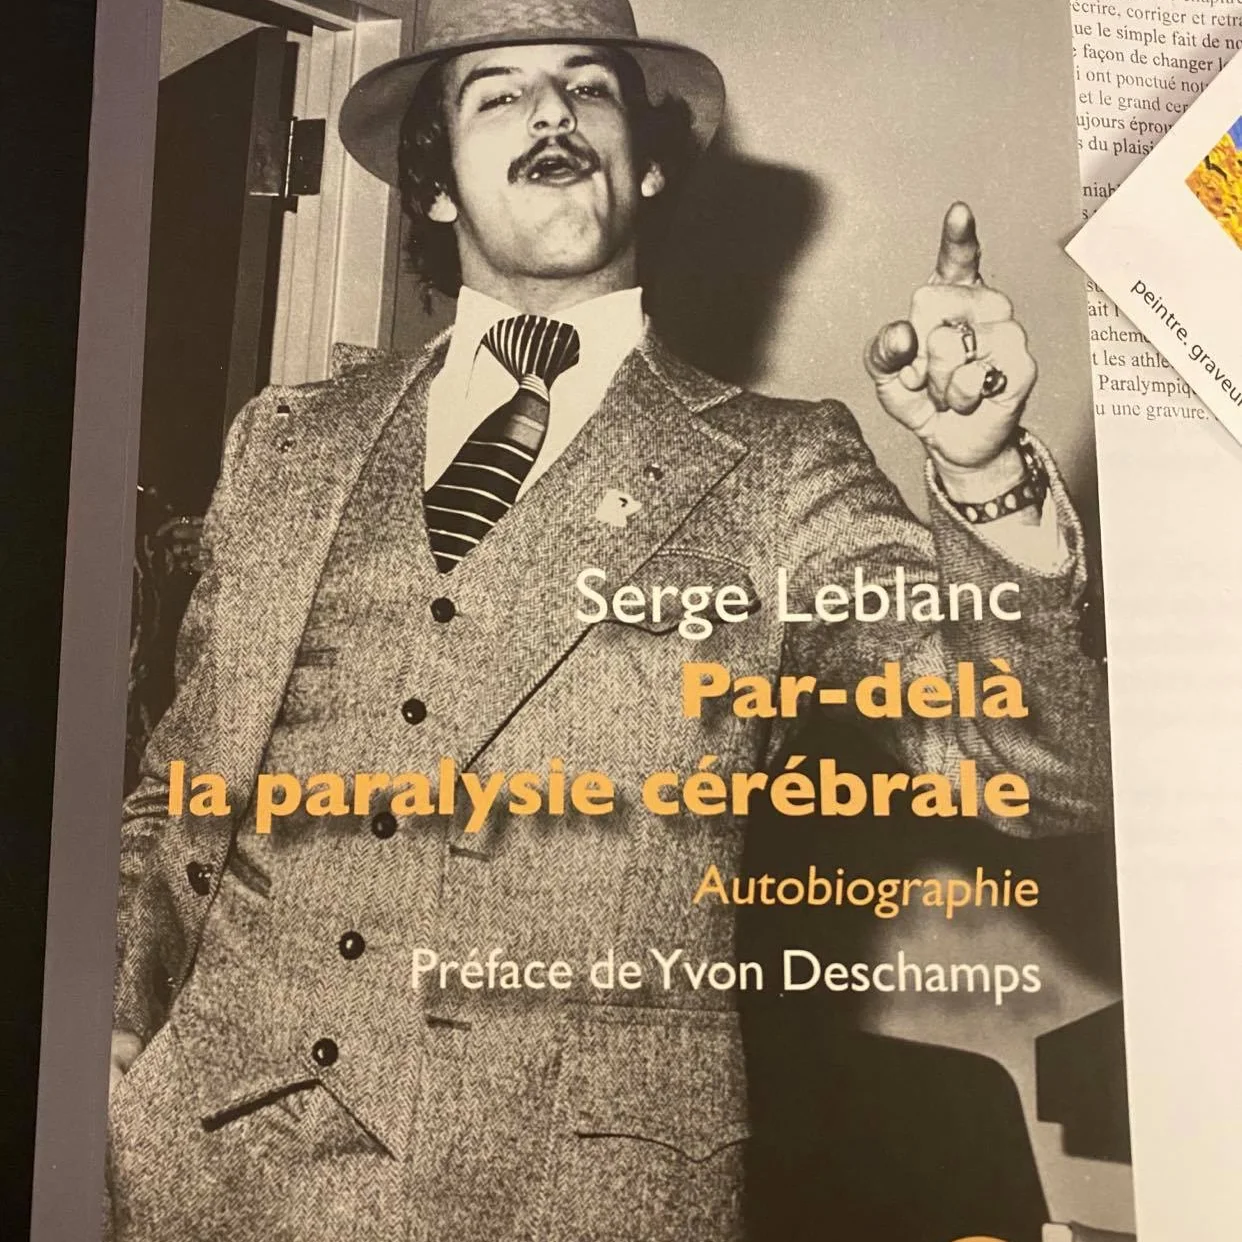 Serge Leblanc page couverture de son livre